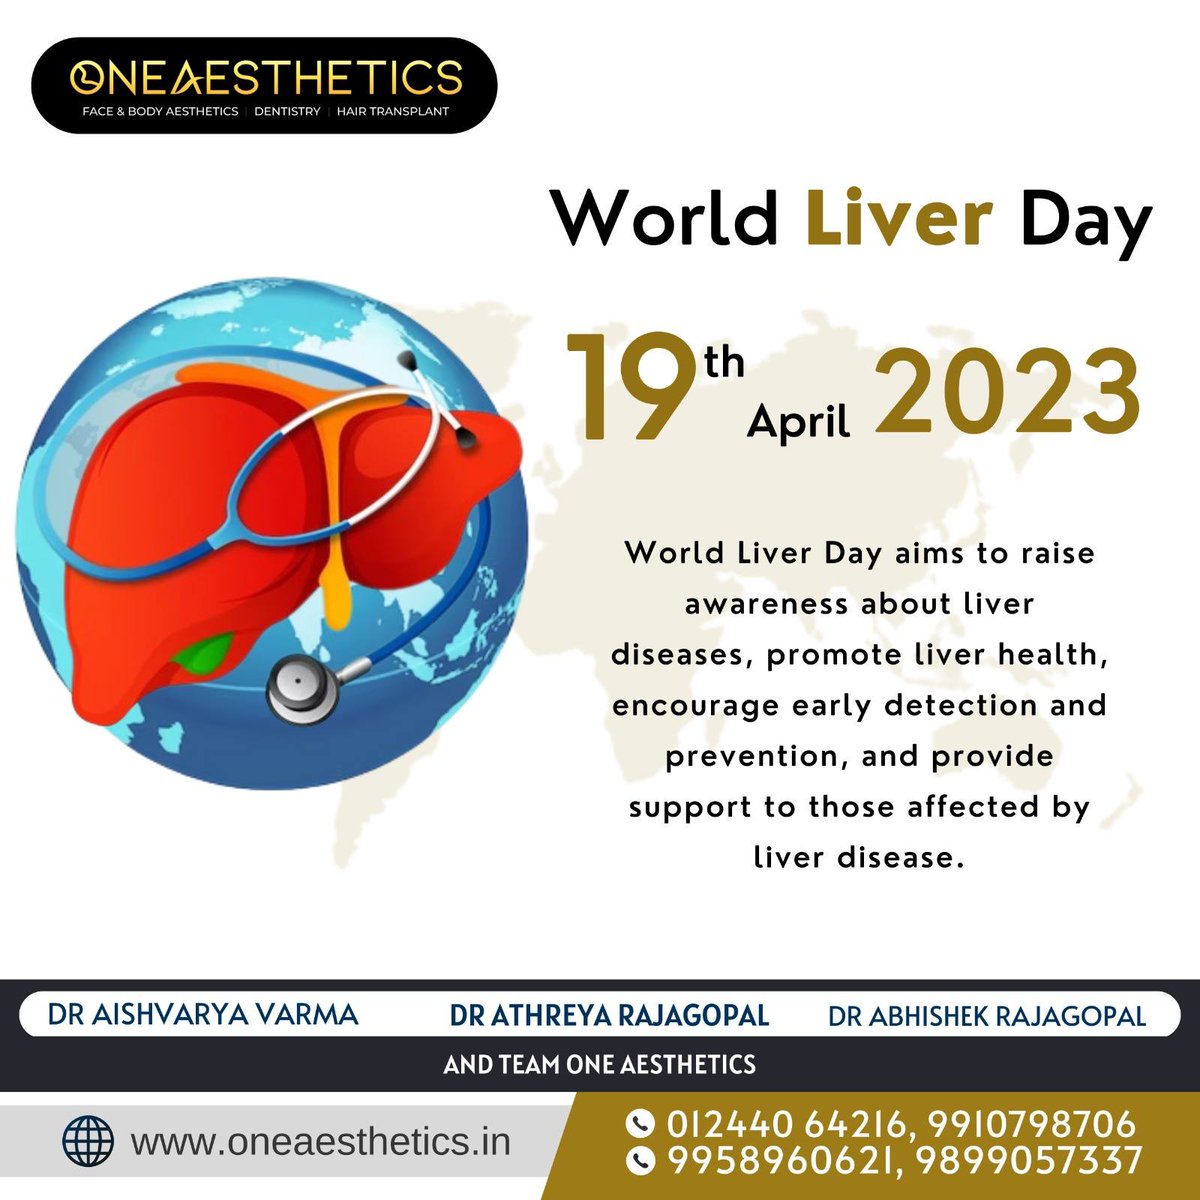 World Liver Day

#WorldLiverDay #LiverAwareness #LiverHealth #HealthyLiver #LoveYourLiver #LiverDisease #LiverDiseasePrevention #LiverFunction #LiverCare #Liverhealth #StayLiverStrong